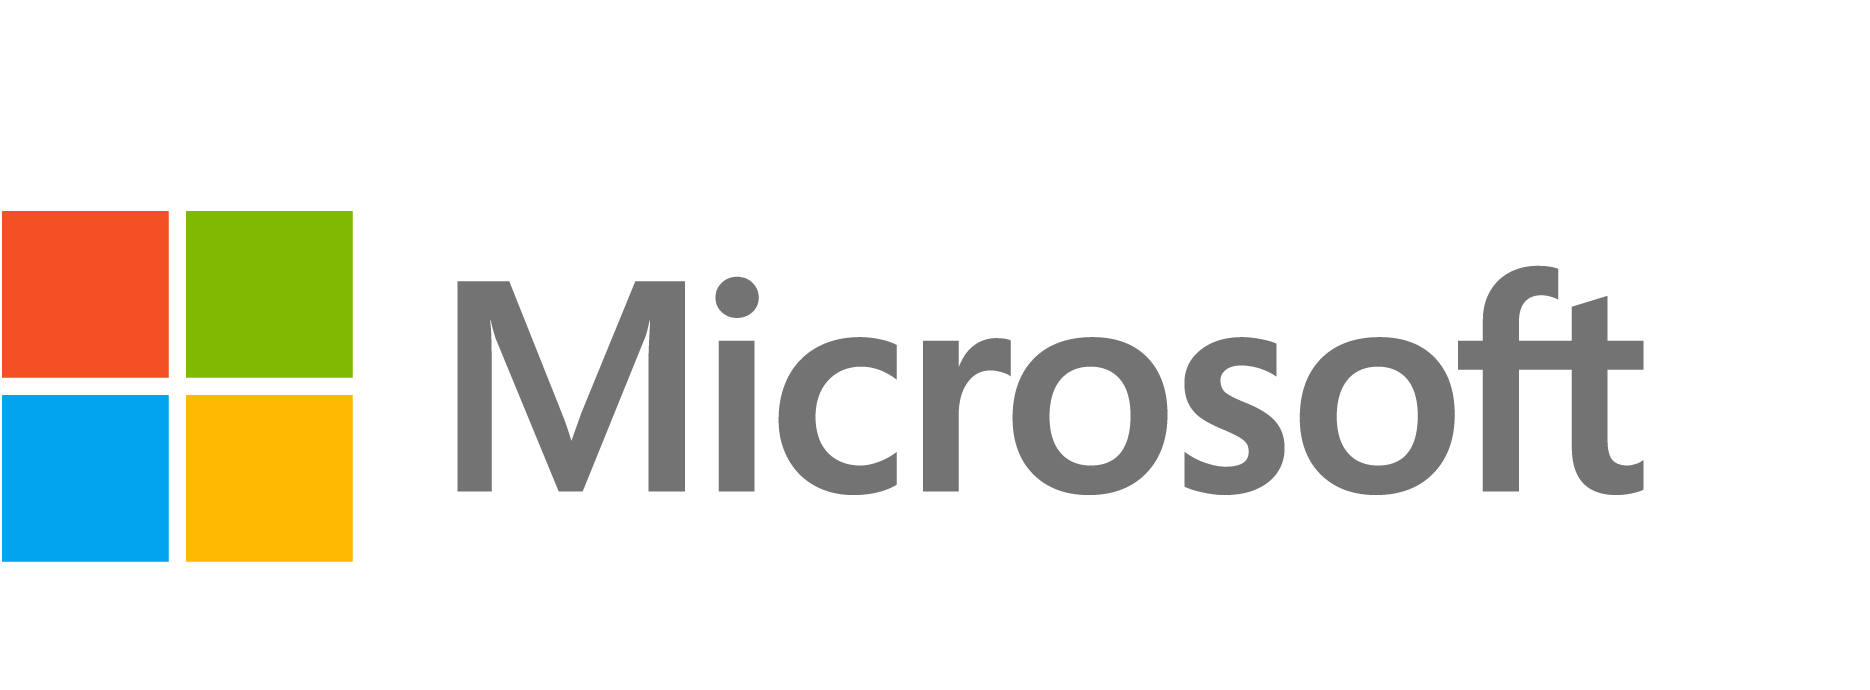 Microsoft Store (retail) - Wikipedia